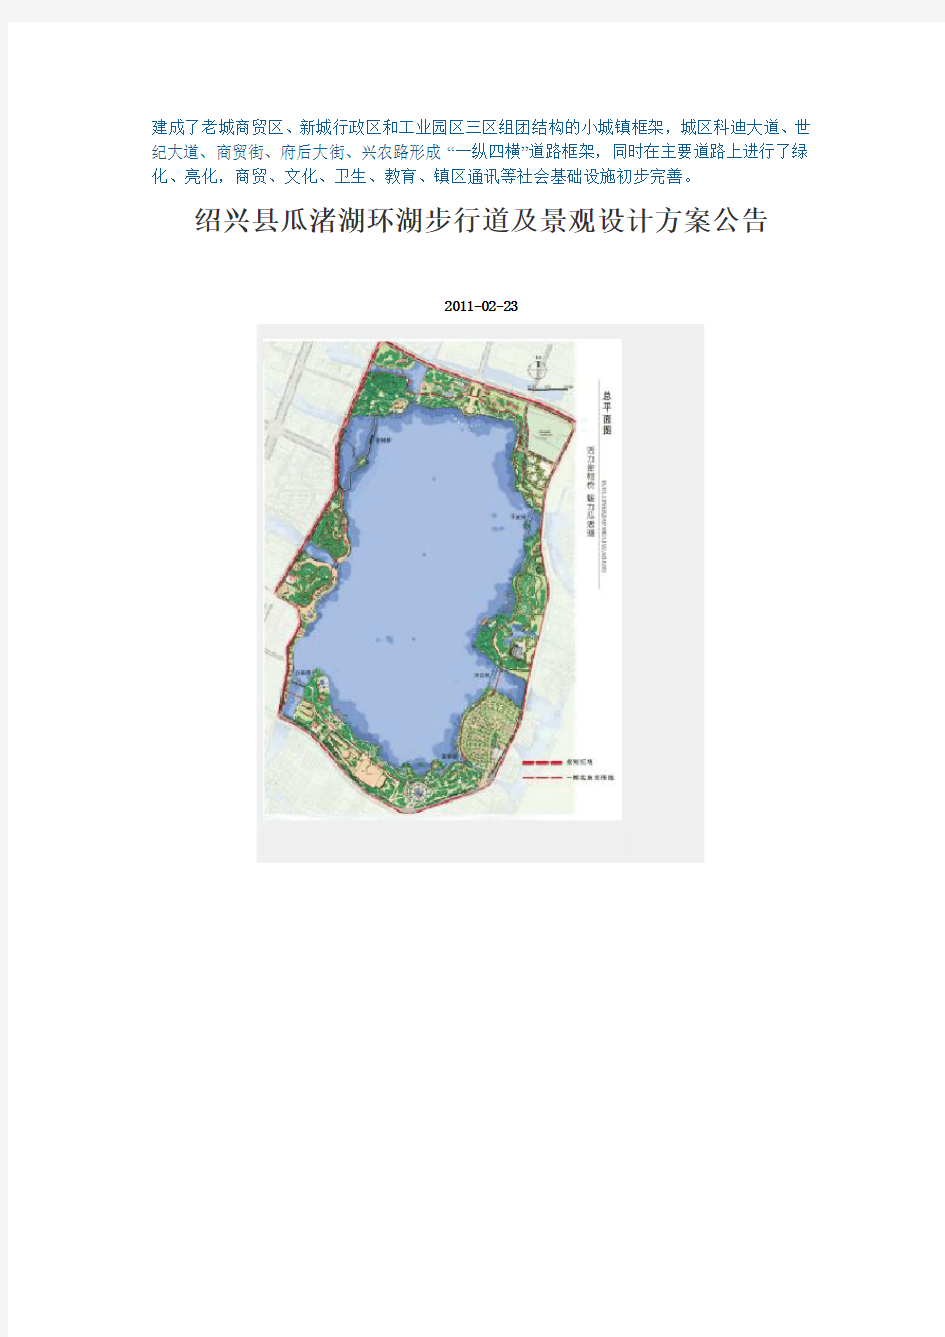 绍兴县瓜渚湖环湖步行道及景观设计方案公告